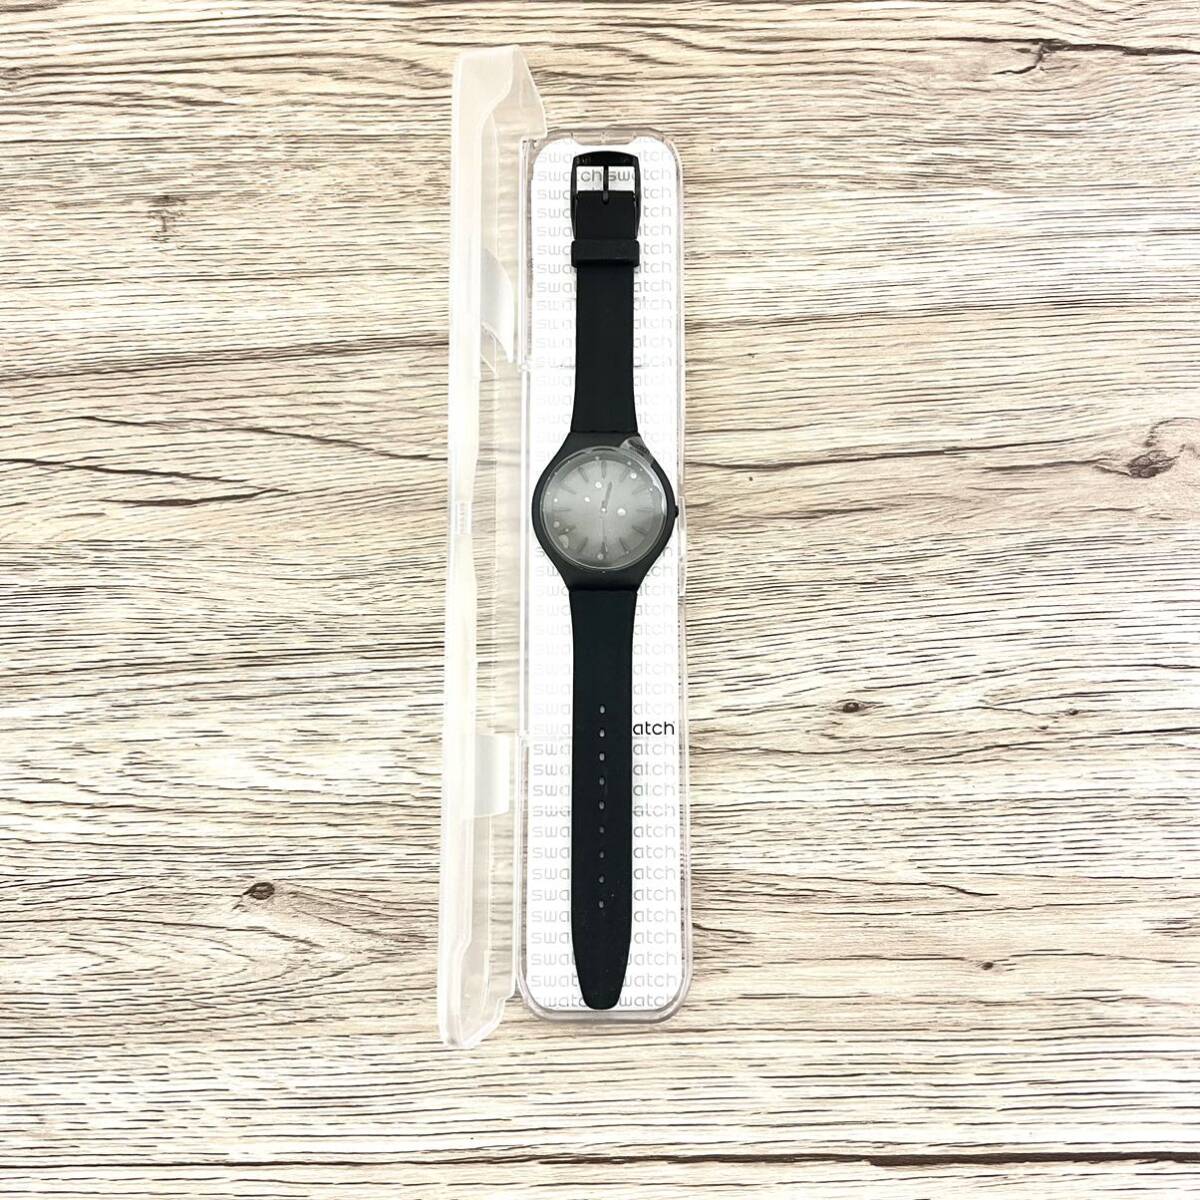 【スイス製腕時計】スウォッチ (SWATCH) SKIN 腕時計 ブラック【クールデザイン】_画像2